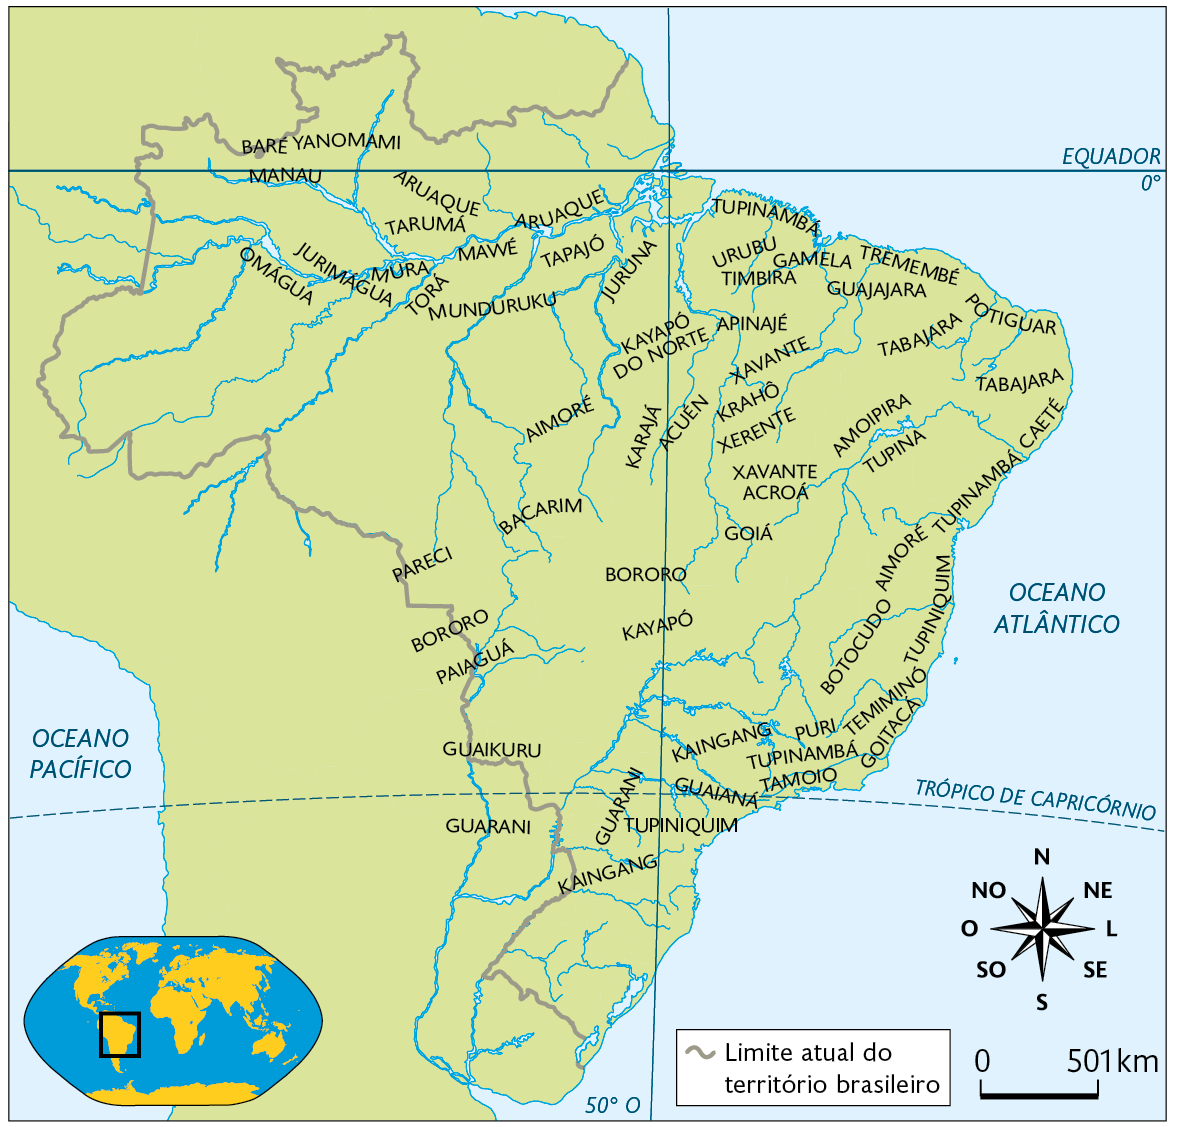 Mapa. Os povos indígenas do Brasil (século 16). Mapa territorial: Povos: Região Norte: BARÉ YANOMAMI, MANAU, JURIMÁGUA, OMÁGUA, MURA, ARUAQUE, TARUMÁ, MAWÉ, ARUAQUE, TAPAJÓ, MUNDURUKU, JURUNA, AIMORÉ, KAYAPÓ DO NORTE, KARAJÁ  e ACUÉN. Região Nordeste: TUPINAMBÁ, TABAJARA, GUAJAJARA, TIMBIRA, GAMELA, URUBU, TREMEMBÉ, POTIGUAR, APINAJÉ, XAVANTE, KRAHÔ, XERENTE, XAVANTE, AMOIPIRA, TUPINA, GOIÁ, AIMORÉ, CAETÉ, TUPINAMBÁ, TUPINIQUIM, TABAJARA e ACROÁ. Região Centro-oeste: PARECI, PAIAGUÁ, GUAIKURU, BORORO, KAYAPÓ e BACARIN. Região Sudeste: GUAIANÁ, KAINGANG, TUPINAMBÁ, PURI, TAMOIO, BOTOCUDO, TEMIMINÓ e GOITACÁ. Região Sul: GUARANI, KAINGANG e TUPINIQUIM. Na parte inferior, à esquerda, planisfério destacando parte da América do Sul, ao lado, representação da rosa dos ventos e escala de 501 quilômetros por centímetro.